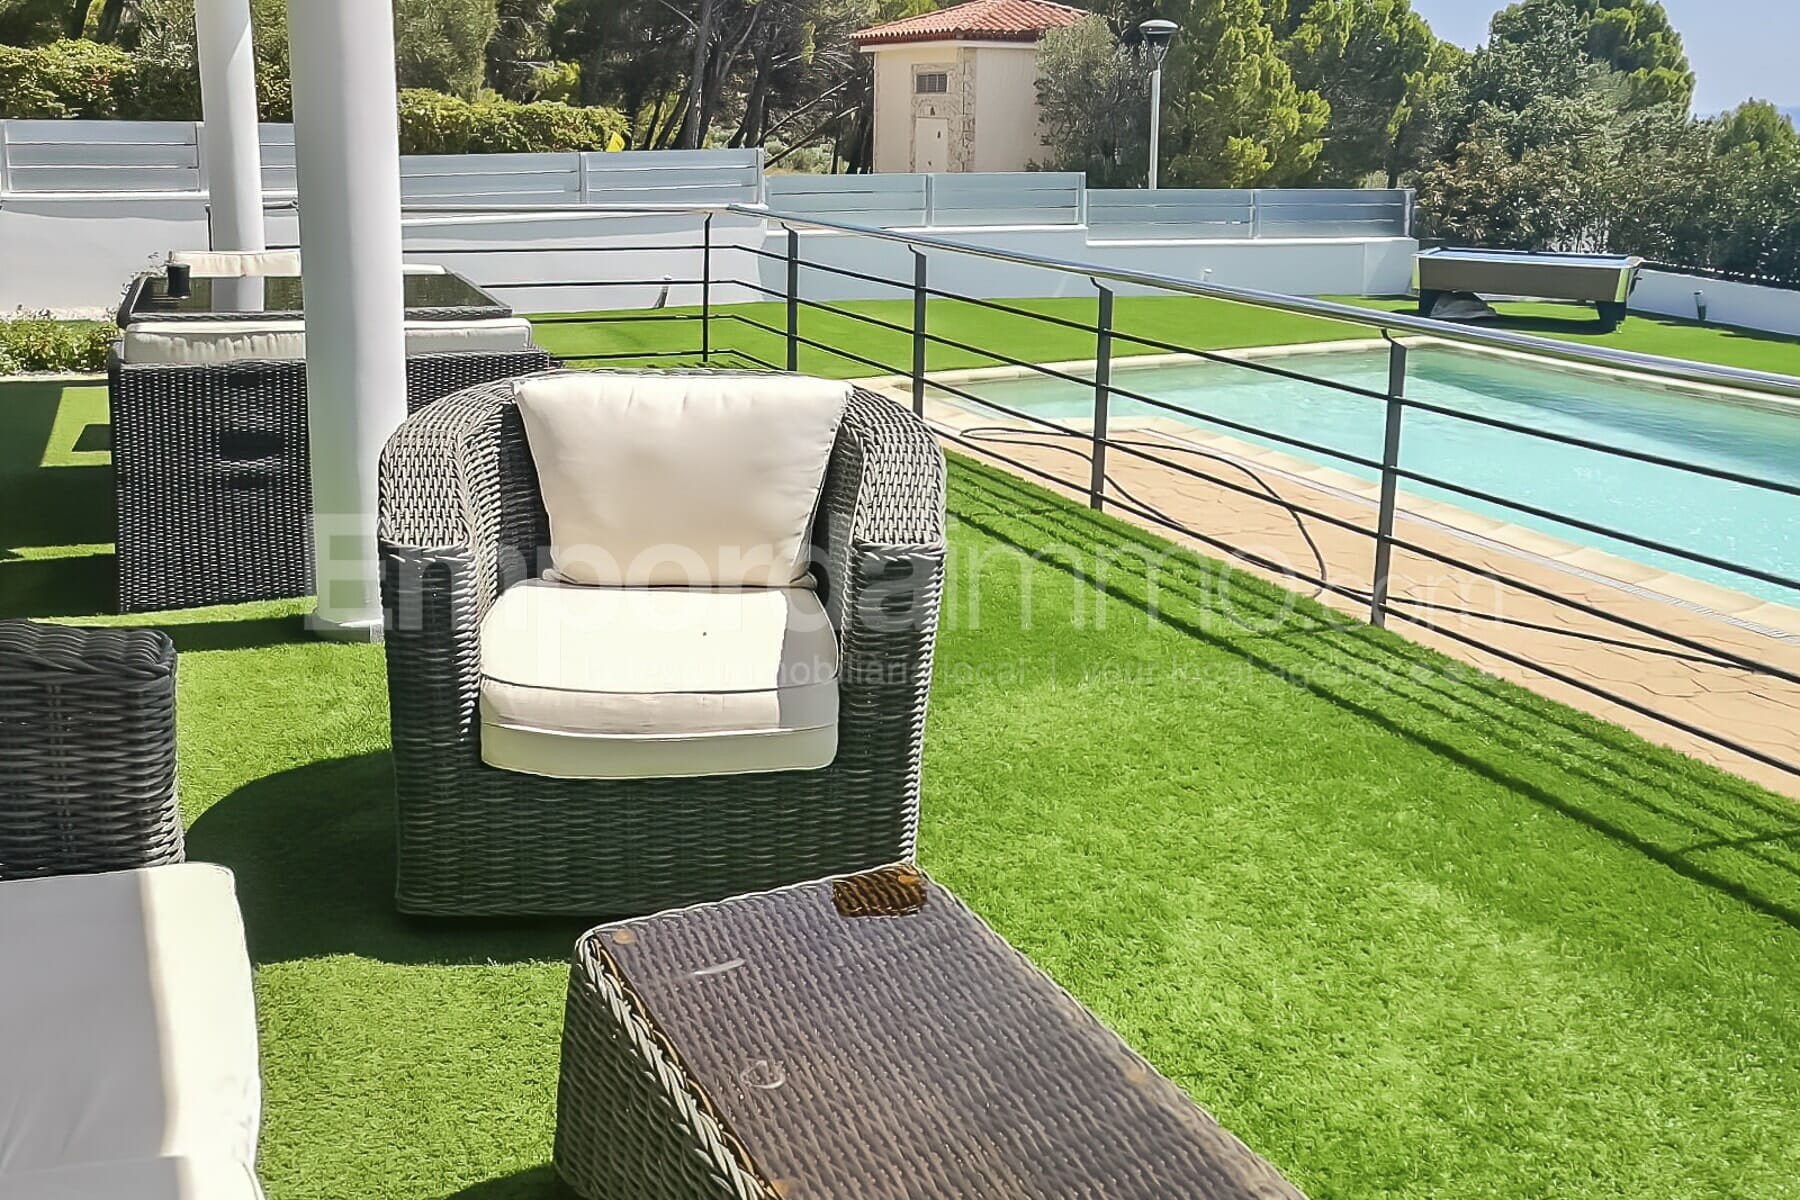 Villa moderna con piscina en venta en Palau Saverdera, Costa Brava